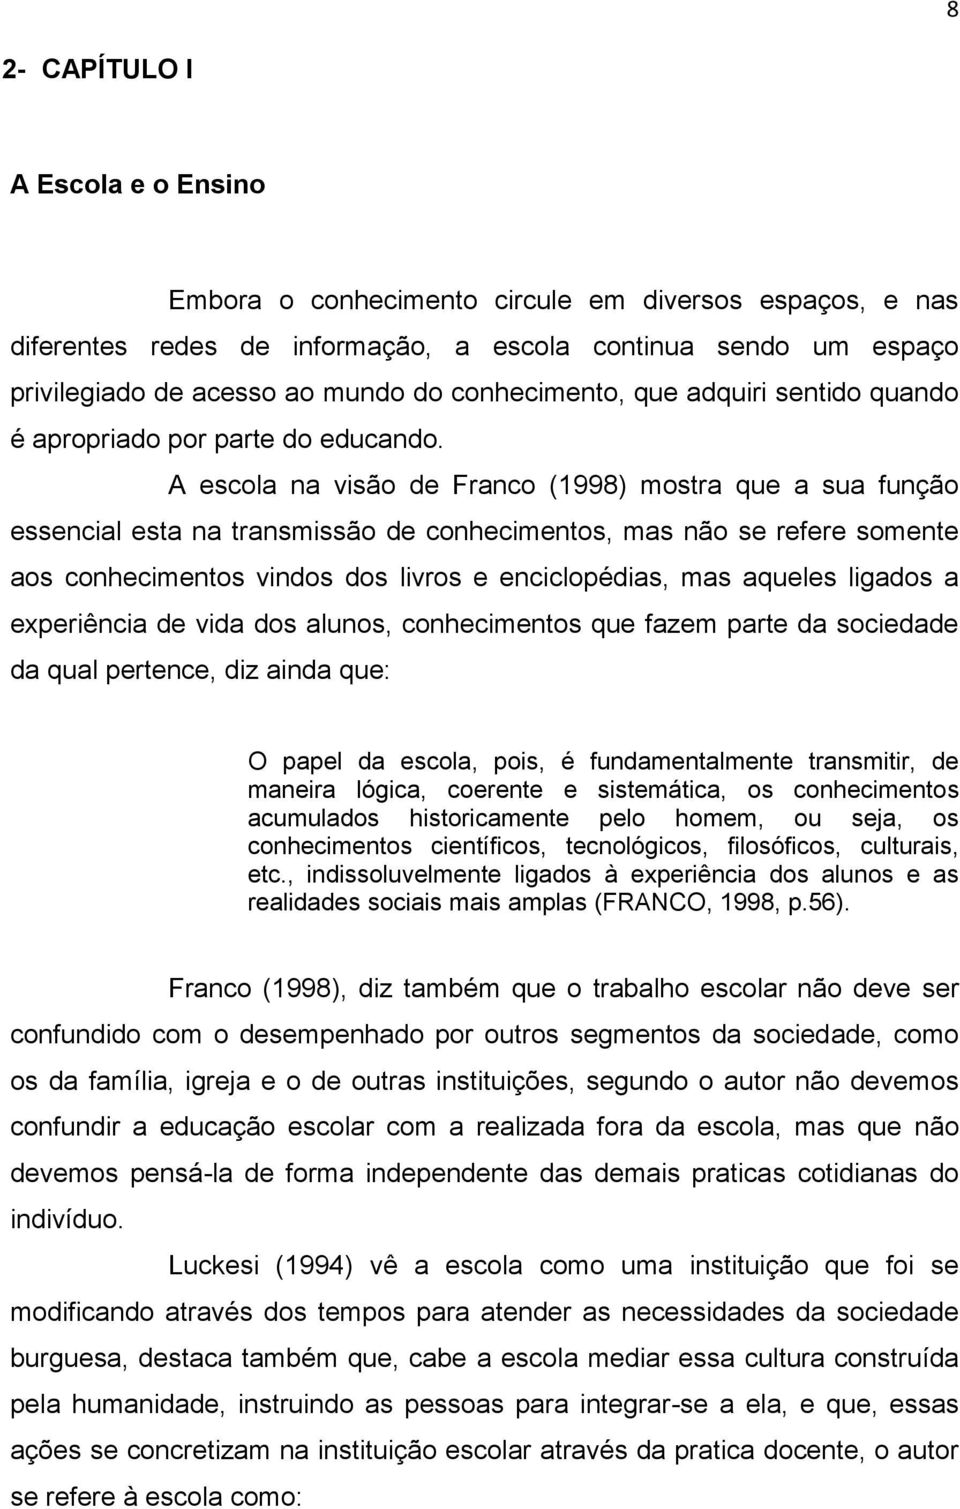 A escola na visão de Franco (1998) mostra que a sua função essencial esta na transmissão de conhecimentos, mas não se refere somente aos conhecimentos vindos dos livros e enciclopédias, mas aqueles